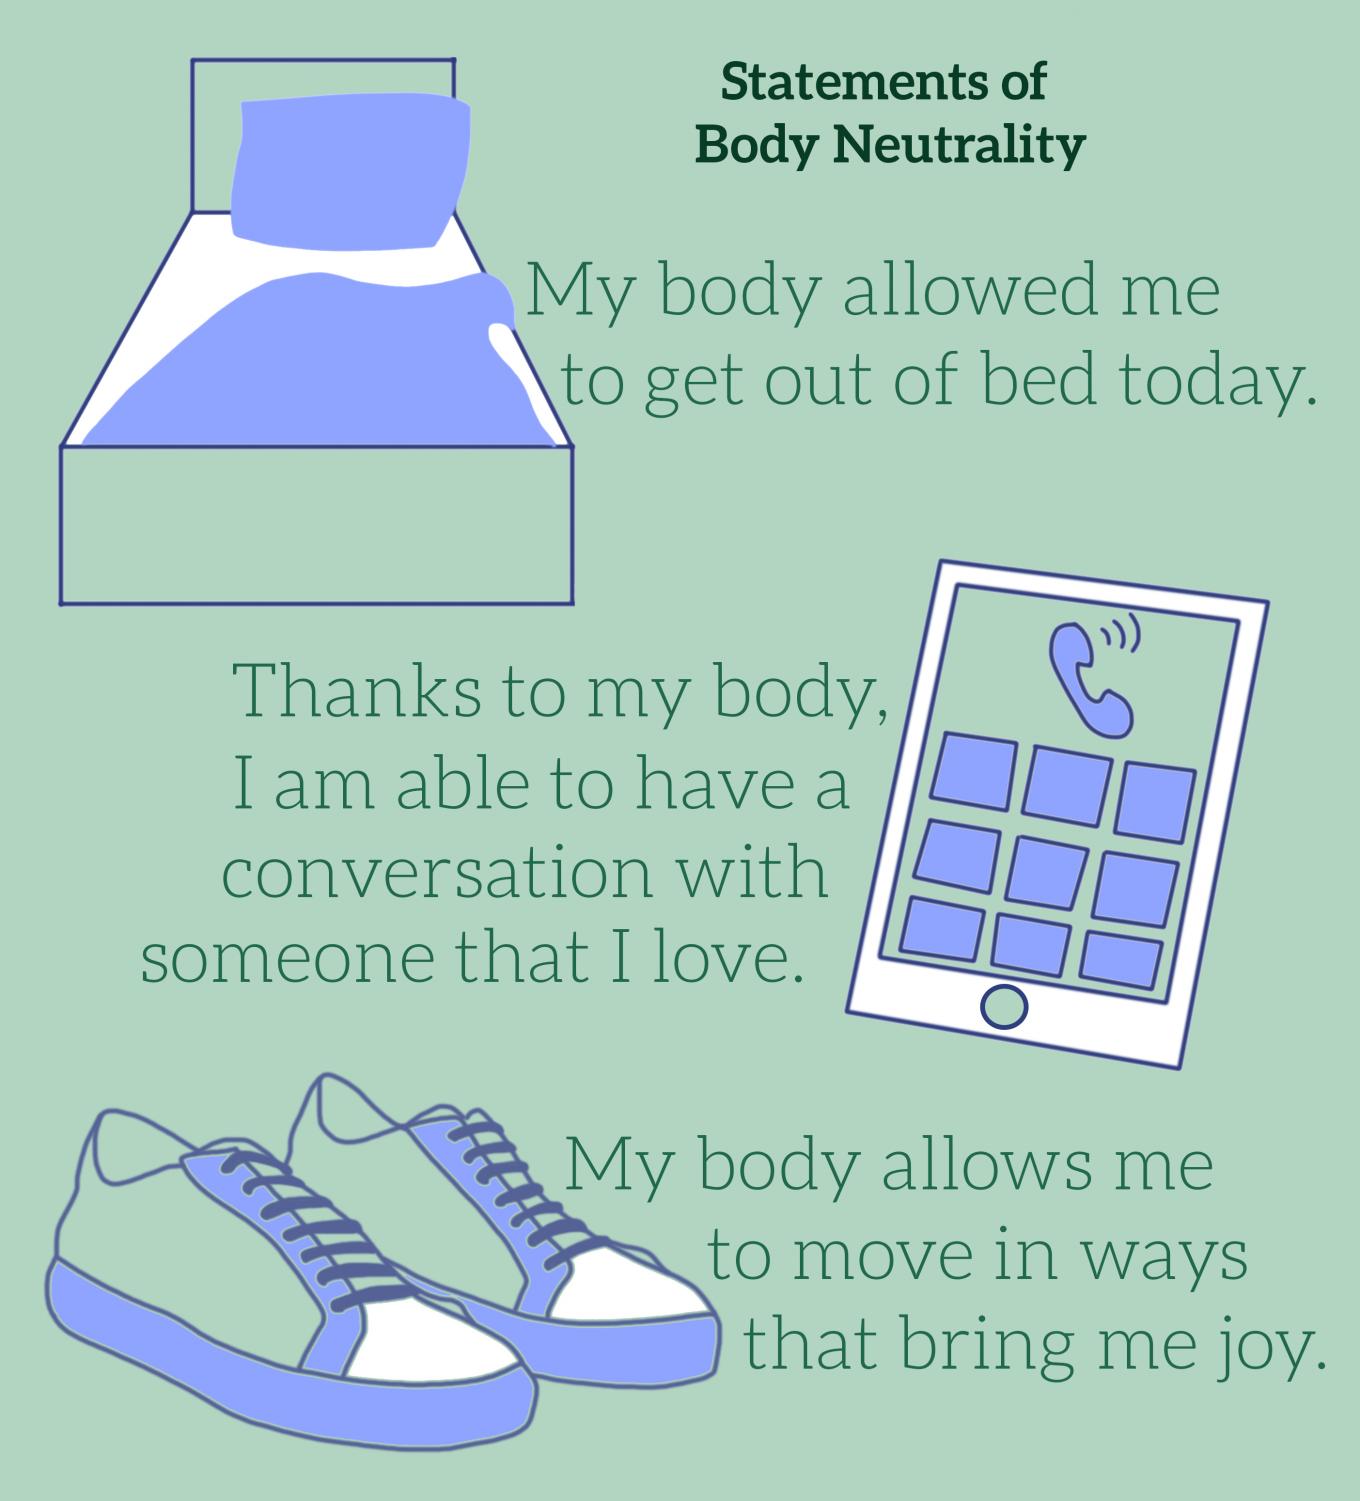 Body neutrality